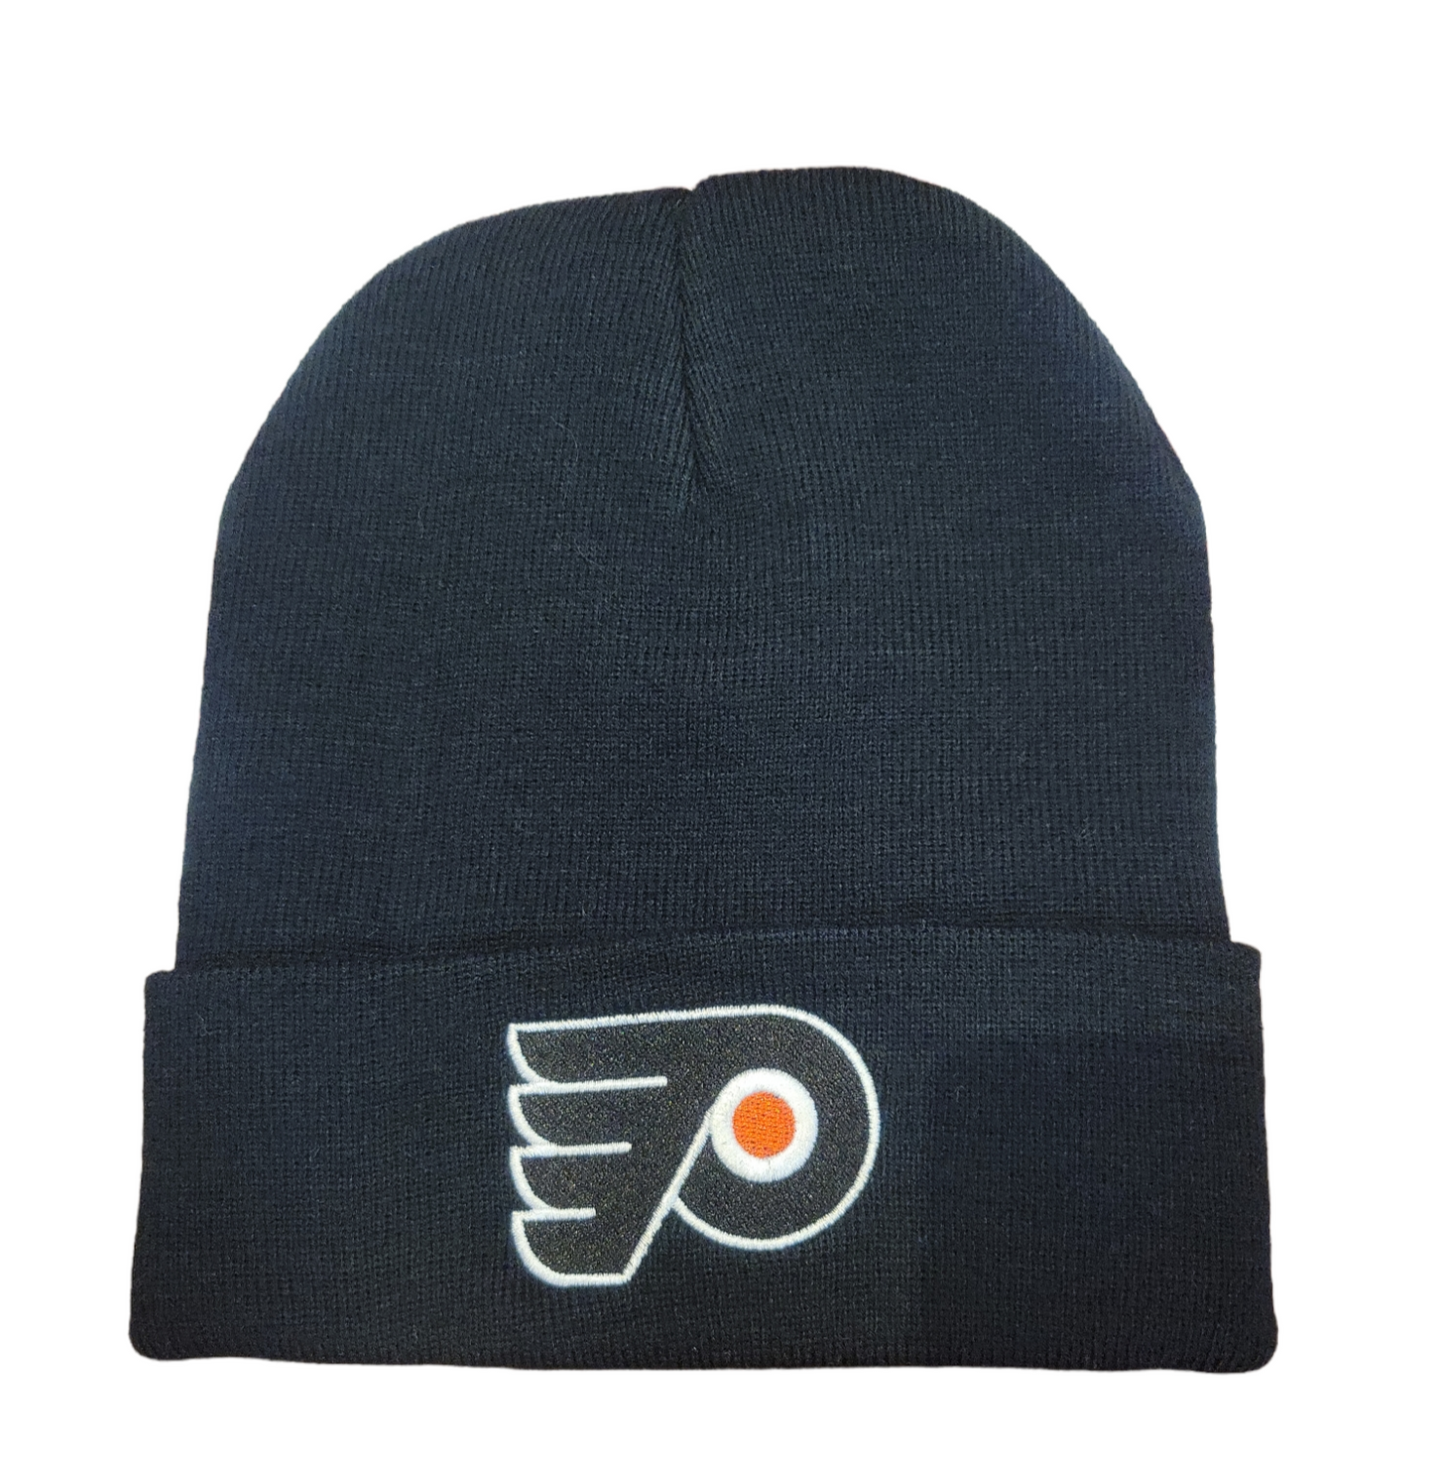 NHL Knit Hat Replica Cuff Flyers